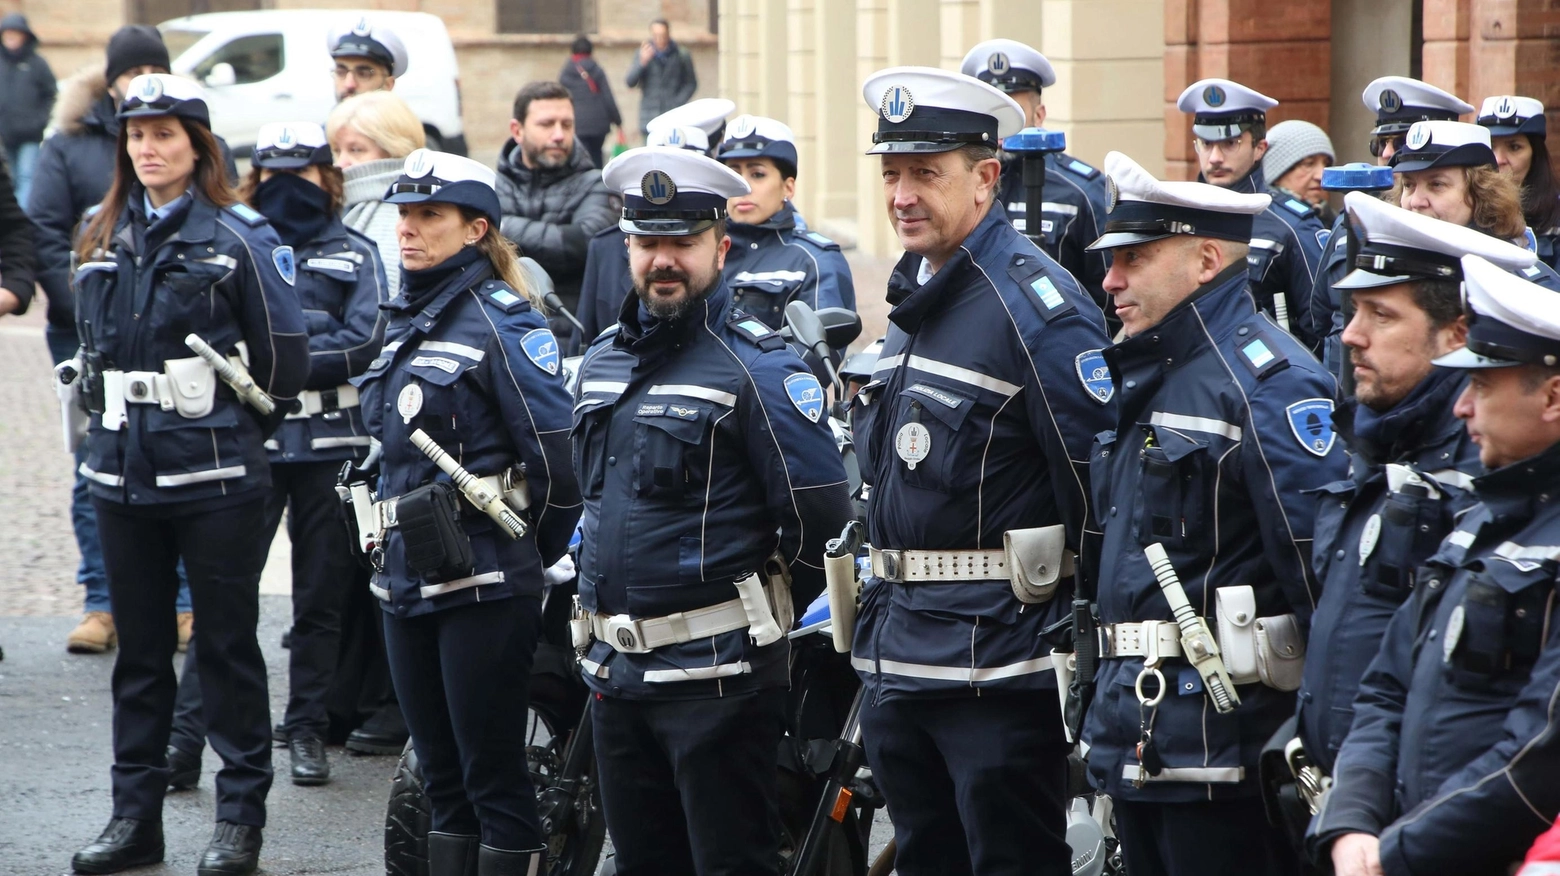 Le indagini sono state condotte dalla Polizia locale di Reggio (foto d’archivio)